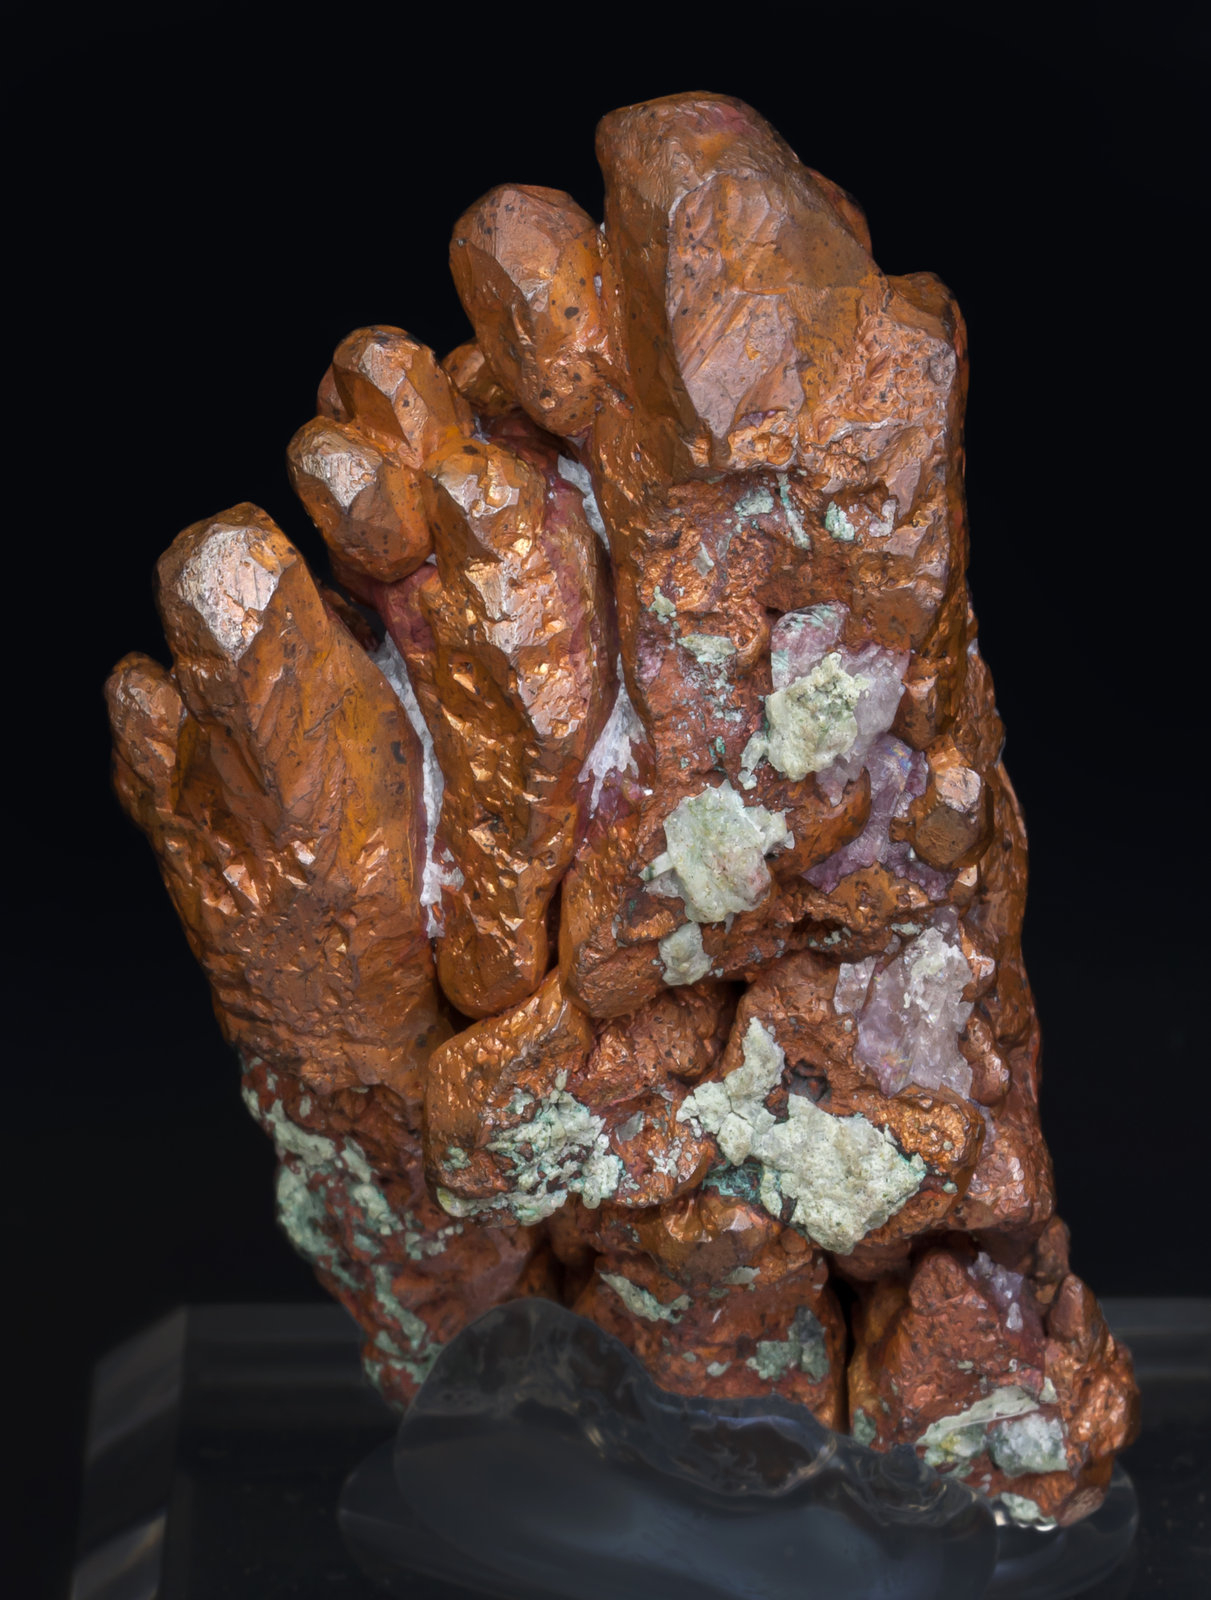 specimens/s_imagesAJ2/Copper-TM48AJ2r.jpg